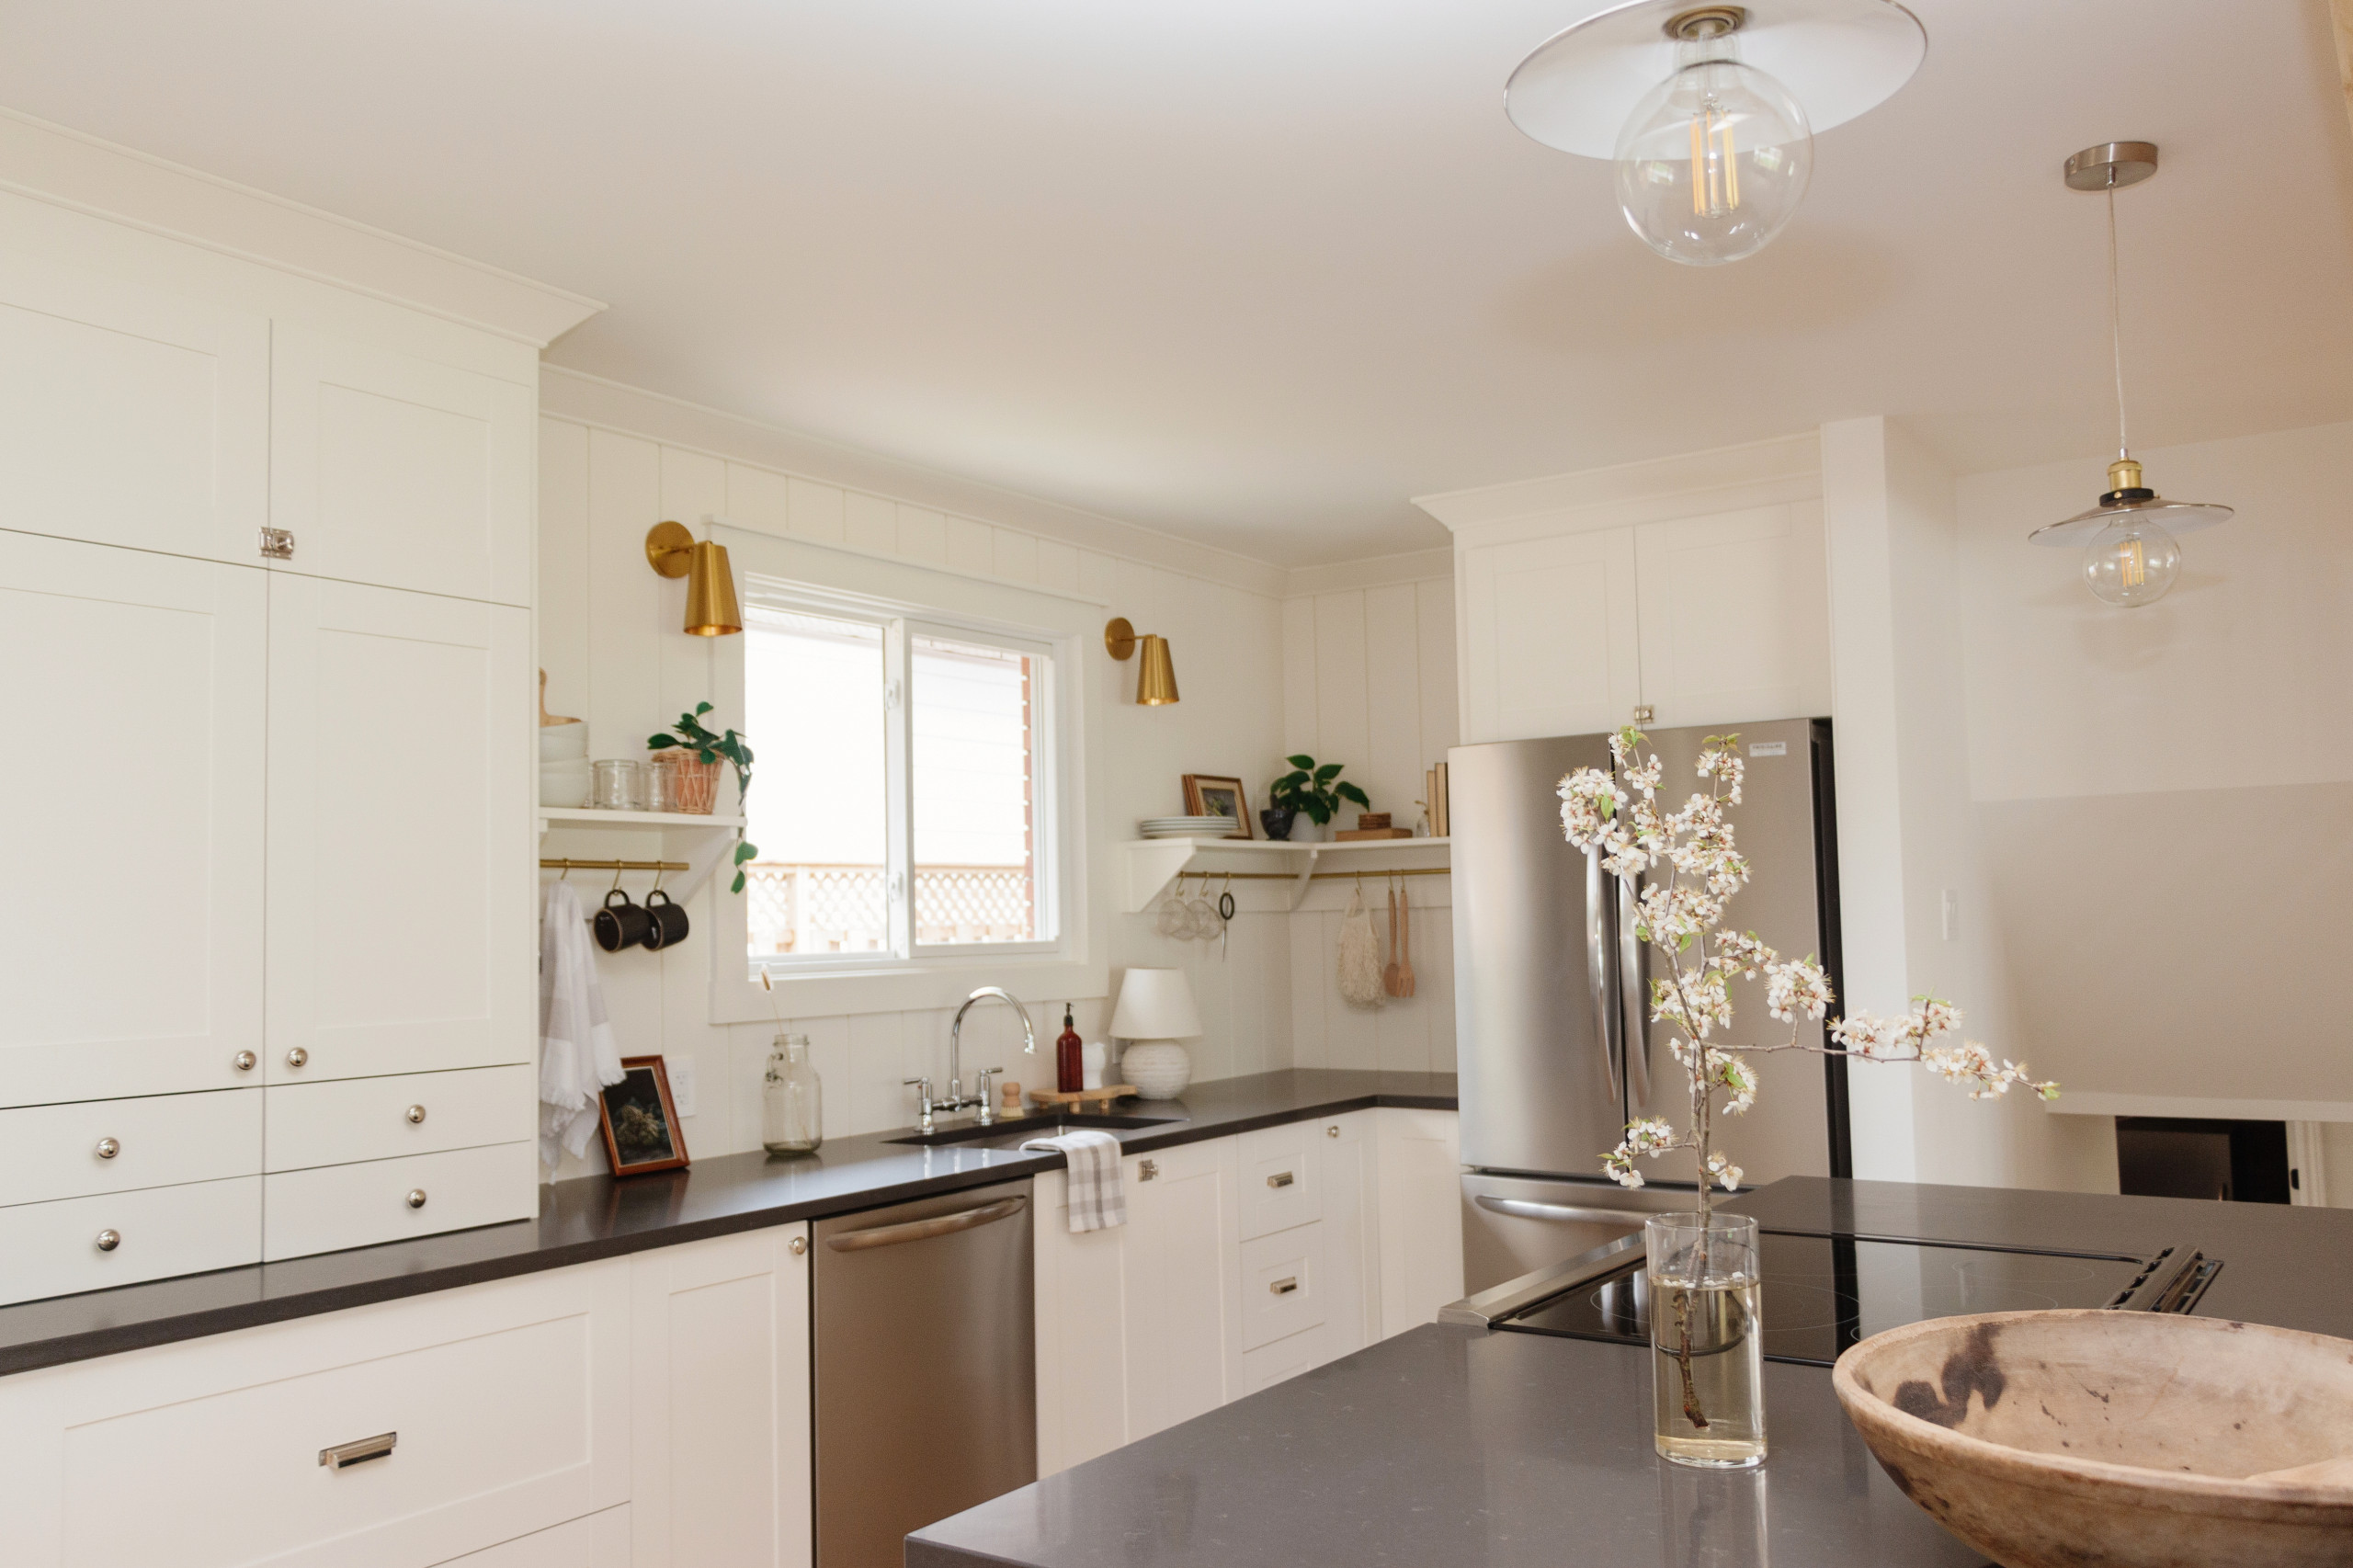 Comment ranger ses ustensiles de cuisine ?  Diy kitchen storage, Kitchen  decor, Home kitchens